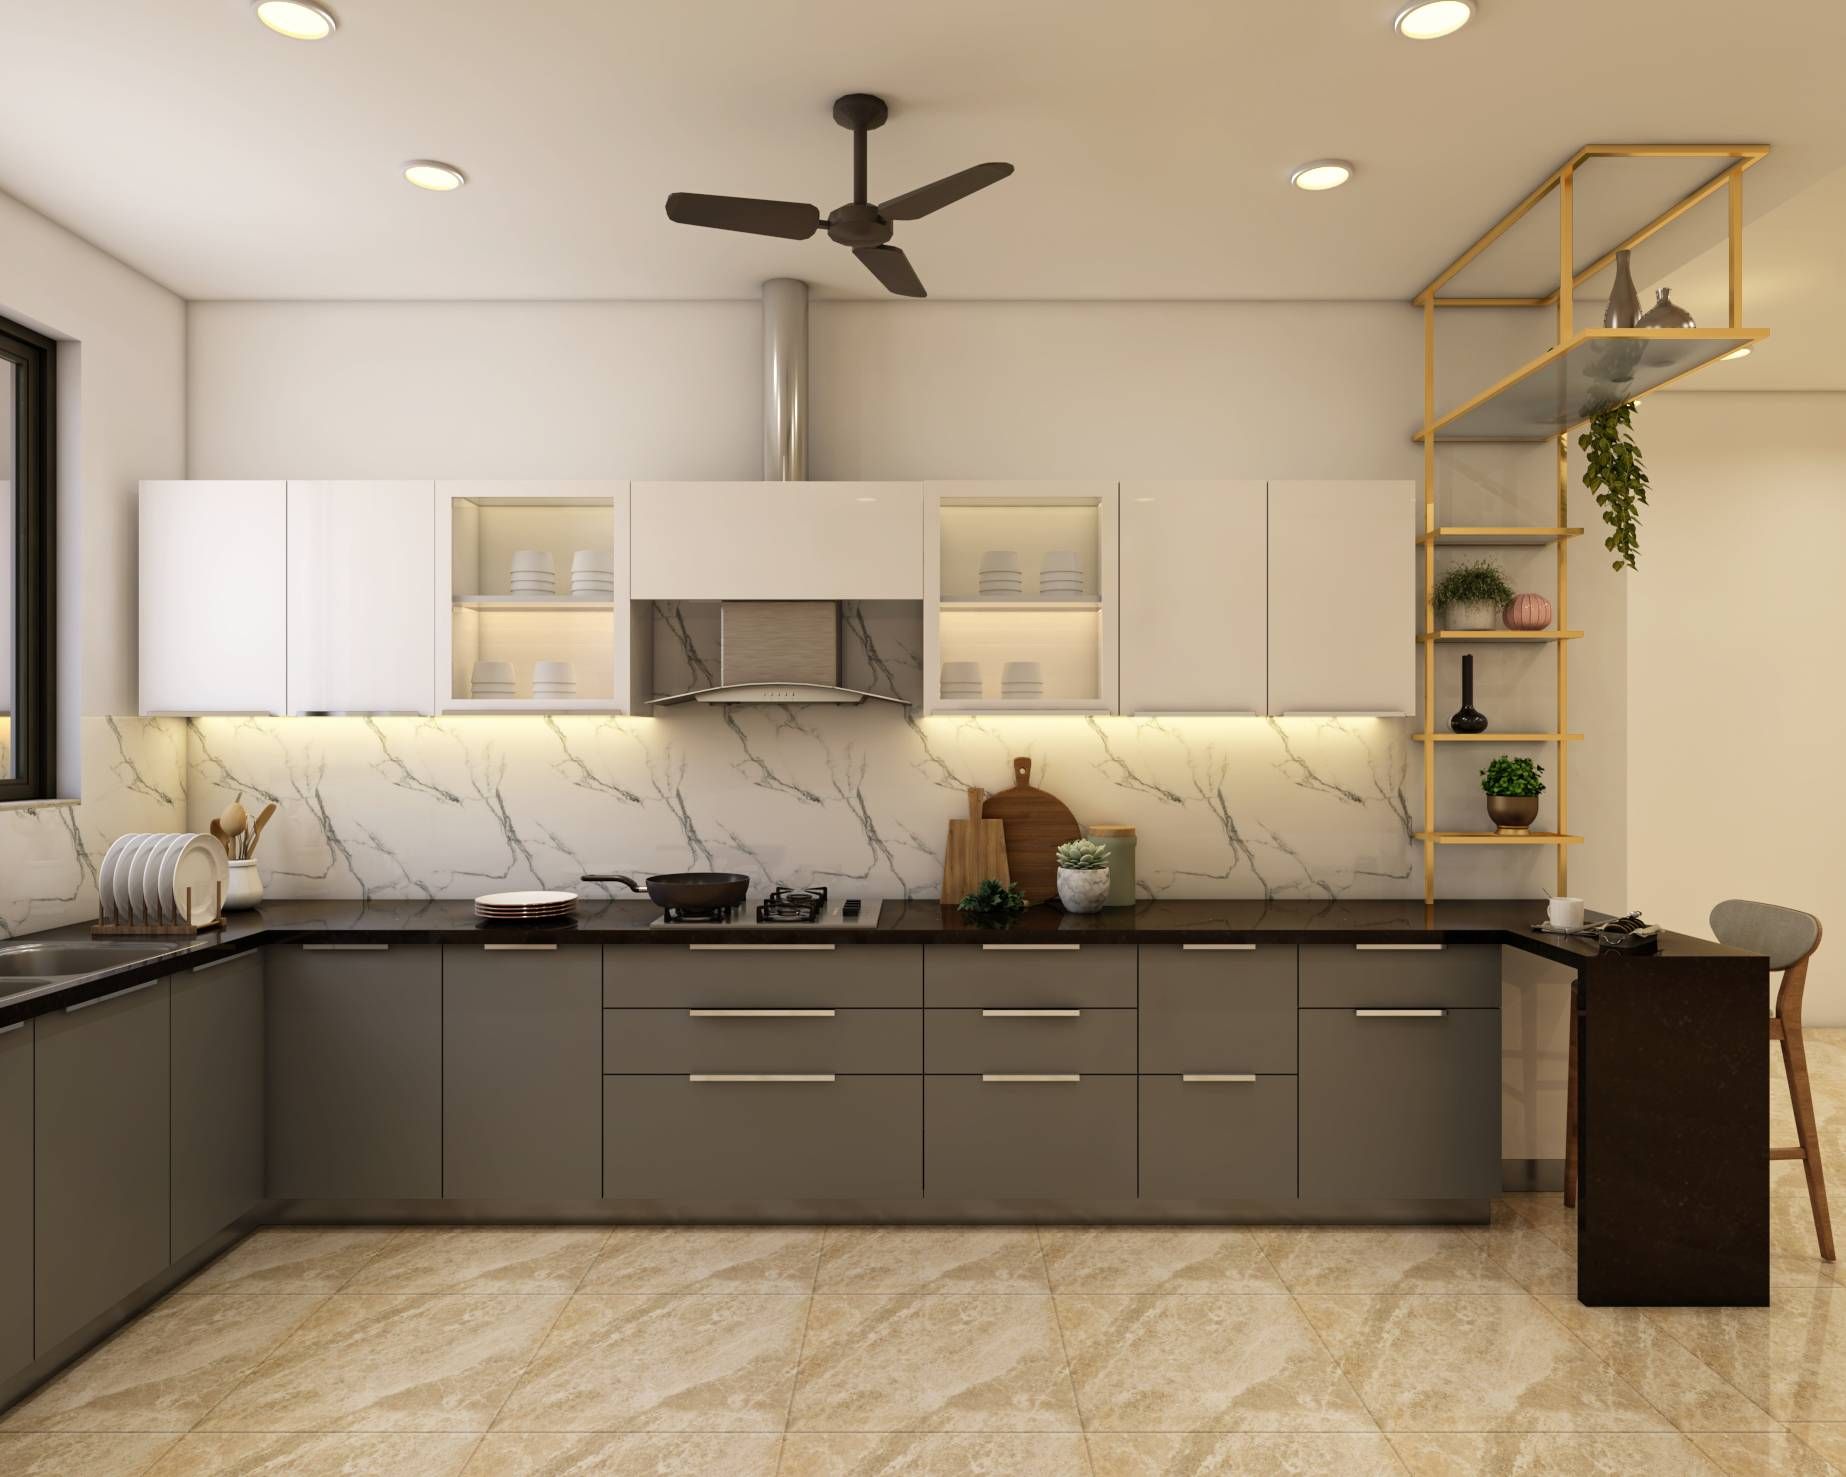 Modern Grey Modular Kitchen Design With Breakfast Counter